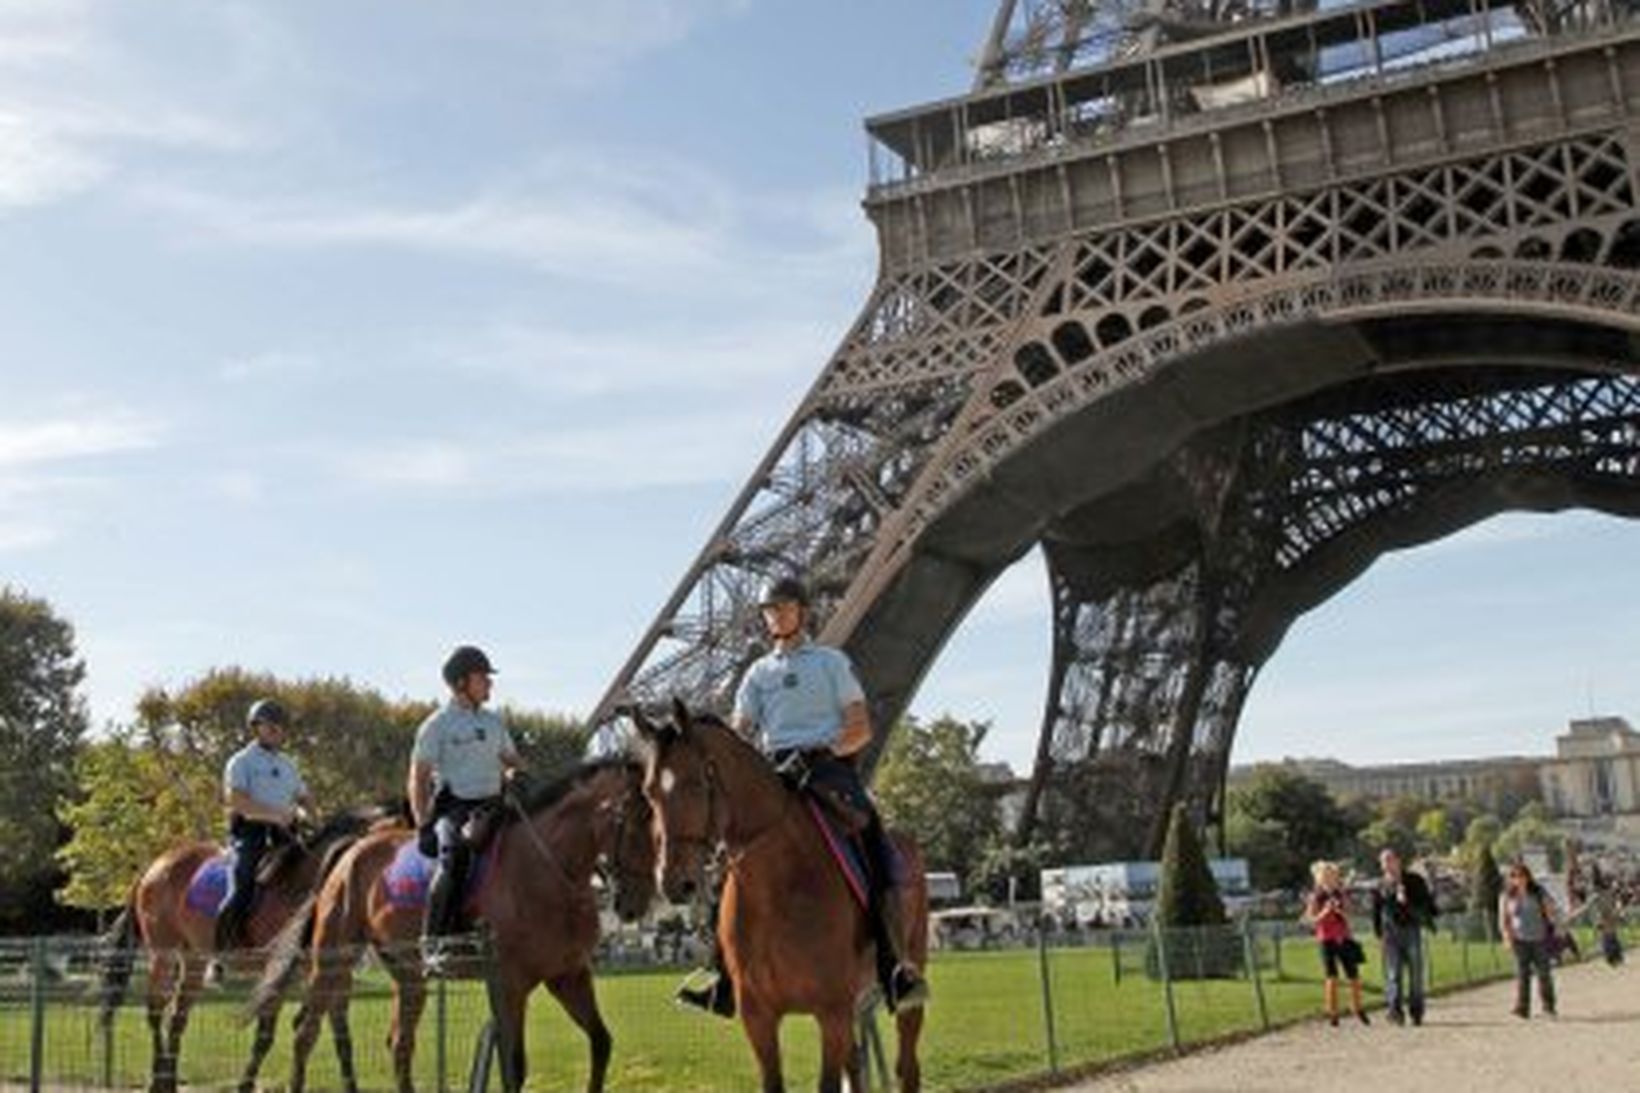 Eiffel turninn er eitt helsta tákn Parísarborgar